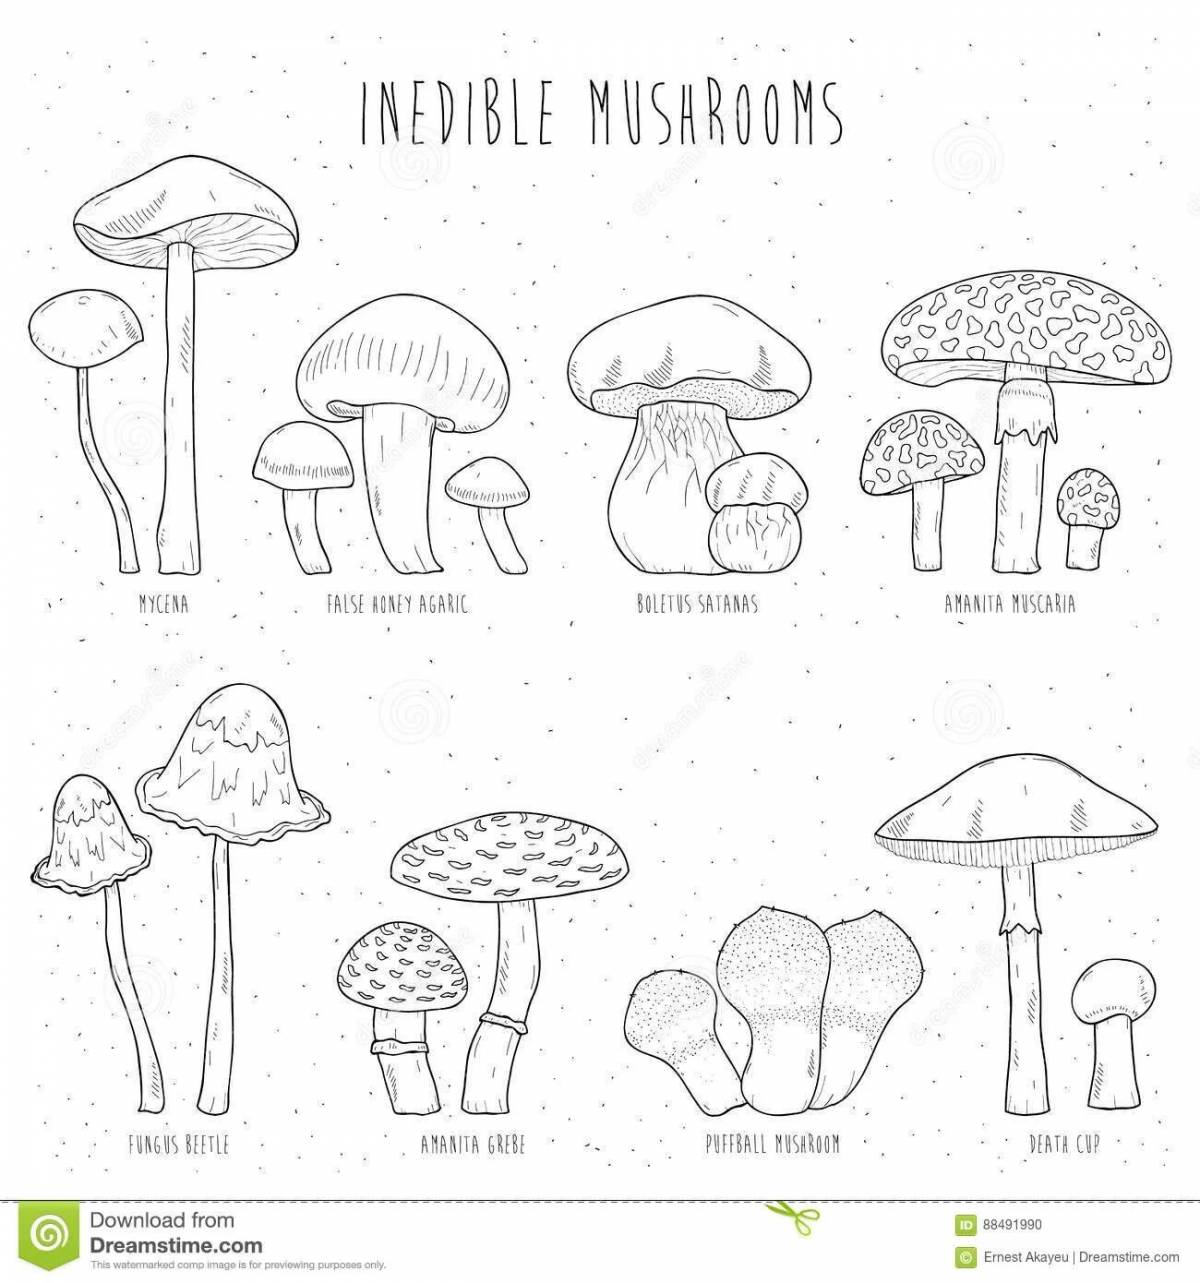 картинки грибов для детей с названиями распечатать